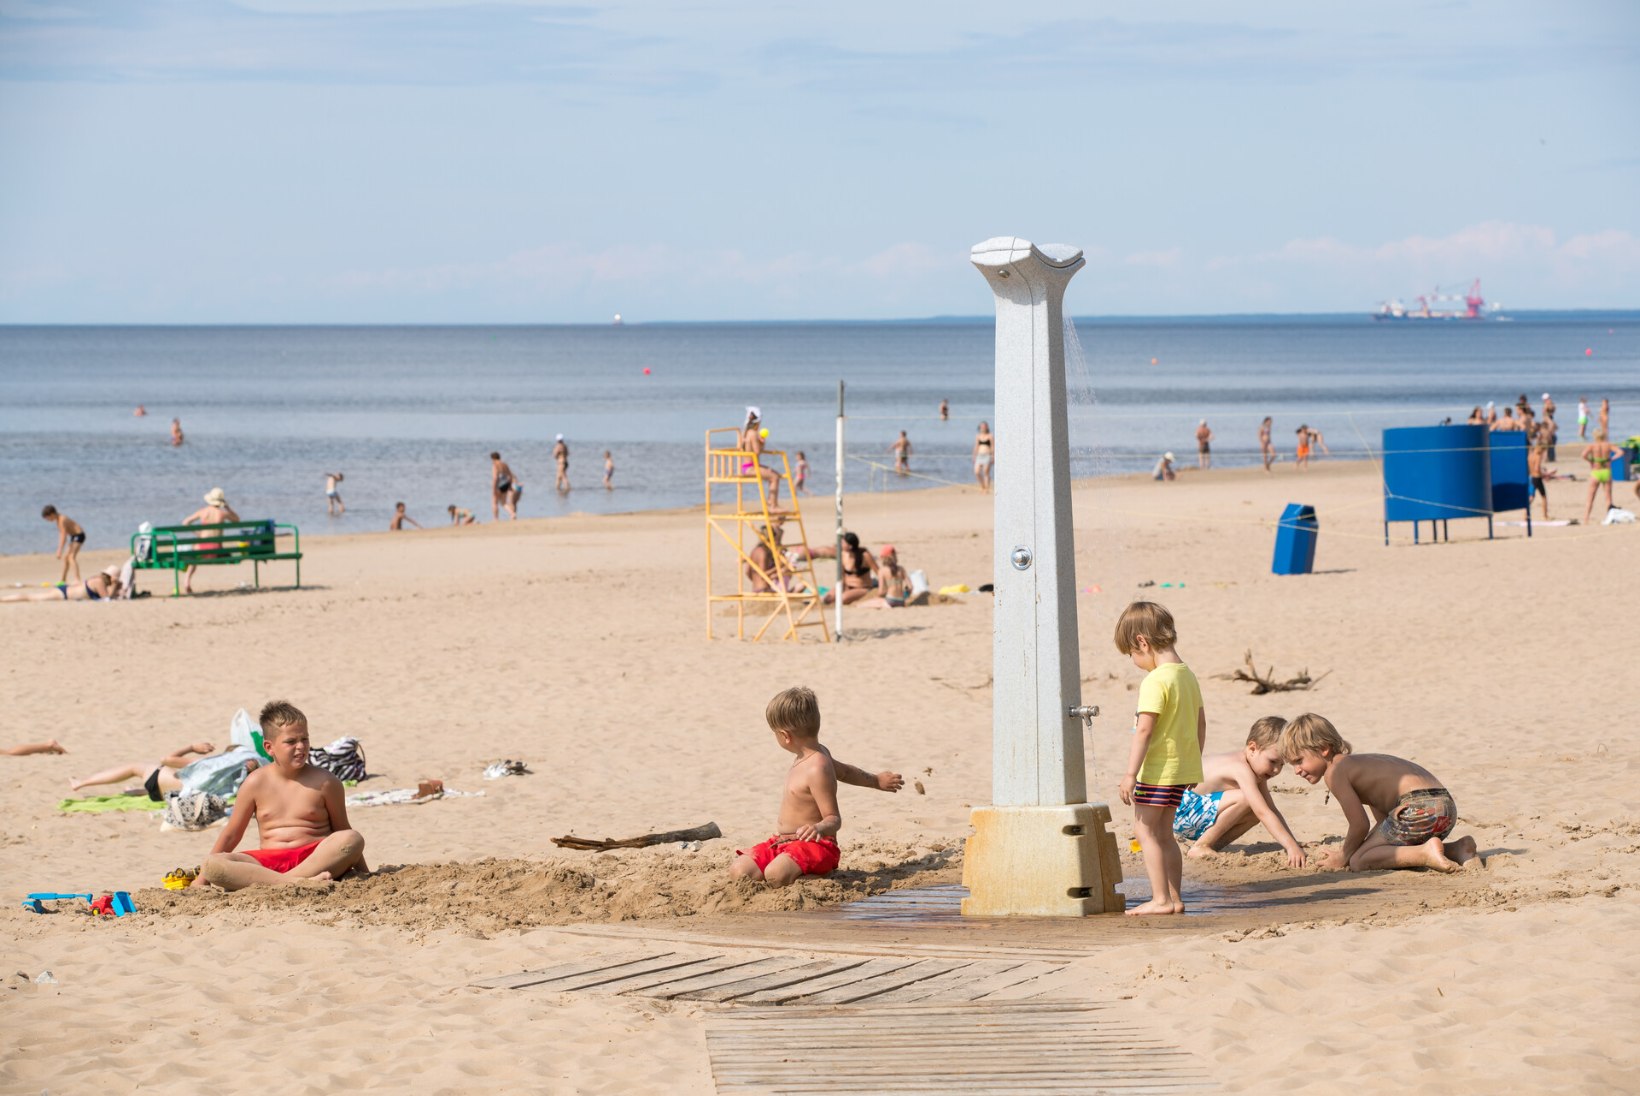 LOE JA JÄTA MEELDE! Eesti suurimate randade välimääraja: kus saab süüa, laps mängida ja mis koha vesi ei kõlba ujumiseks?